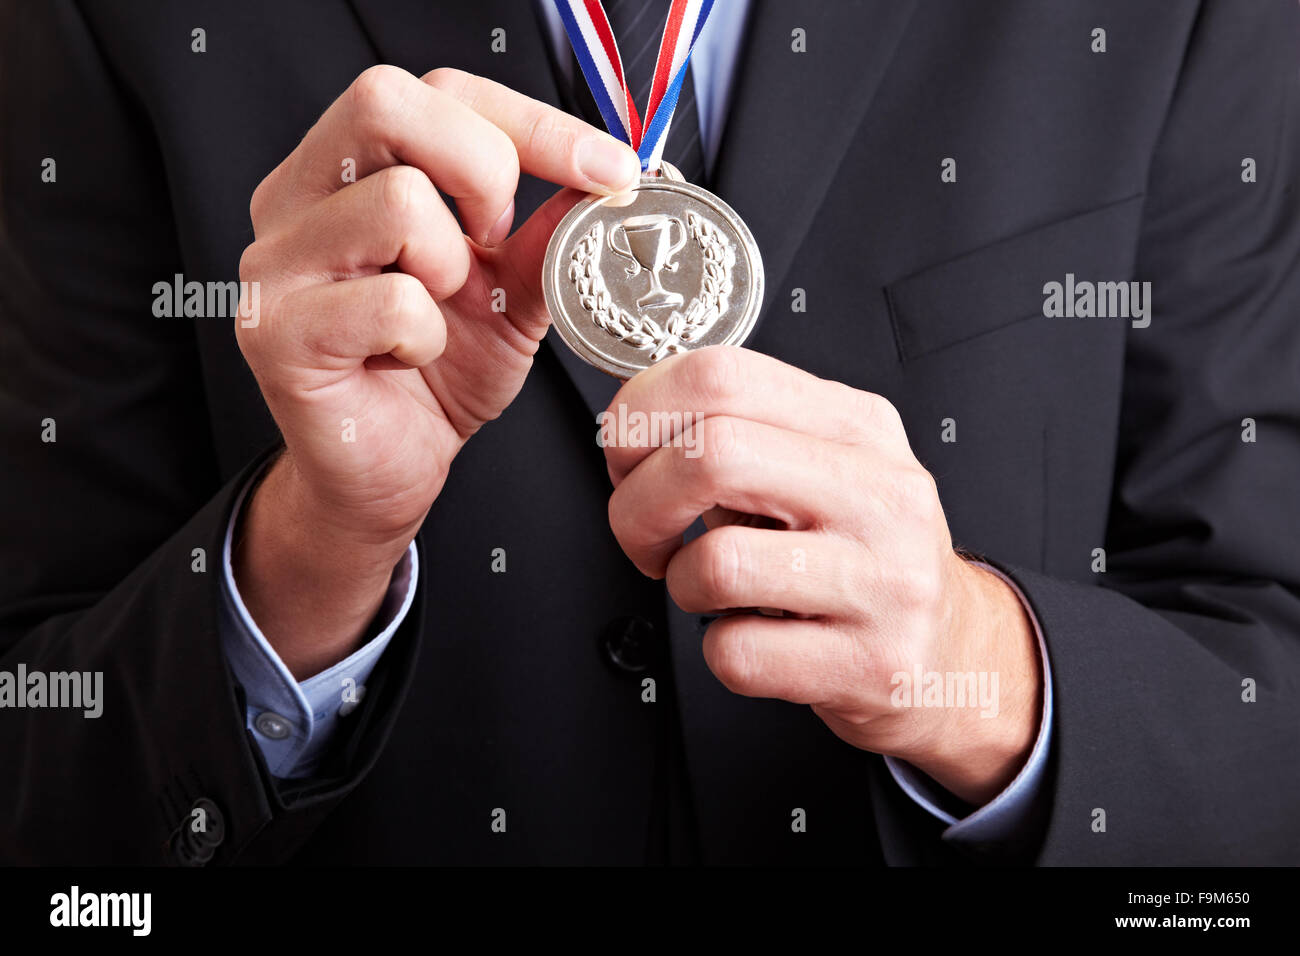 Hände in einem Business-Anzug hält eine Silbermedaille Stockfoto